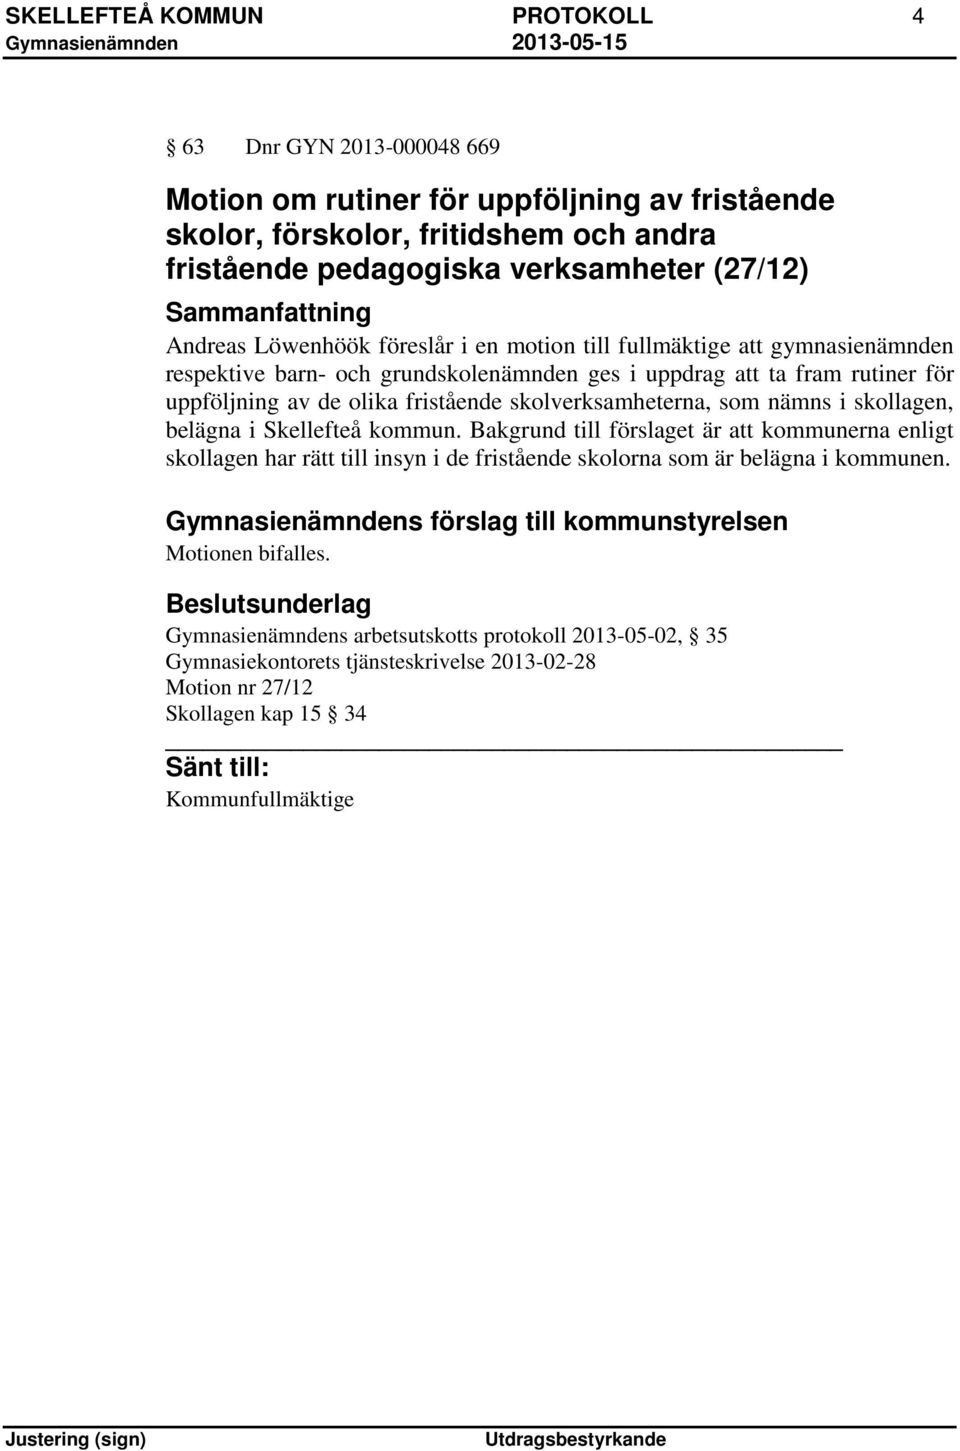 som nämns i skollagen, belägna i Skellefteå kommun. Bakgrund till förslaget är att kommunerna enligt skollagen har rätt till insyn i de fristående skolorna som är belägna i kommunen.